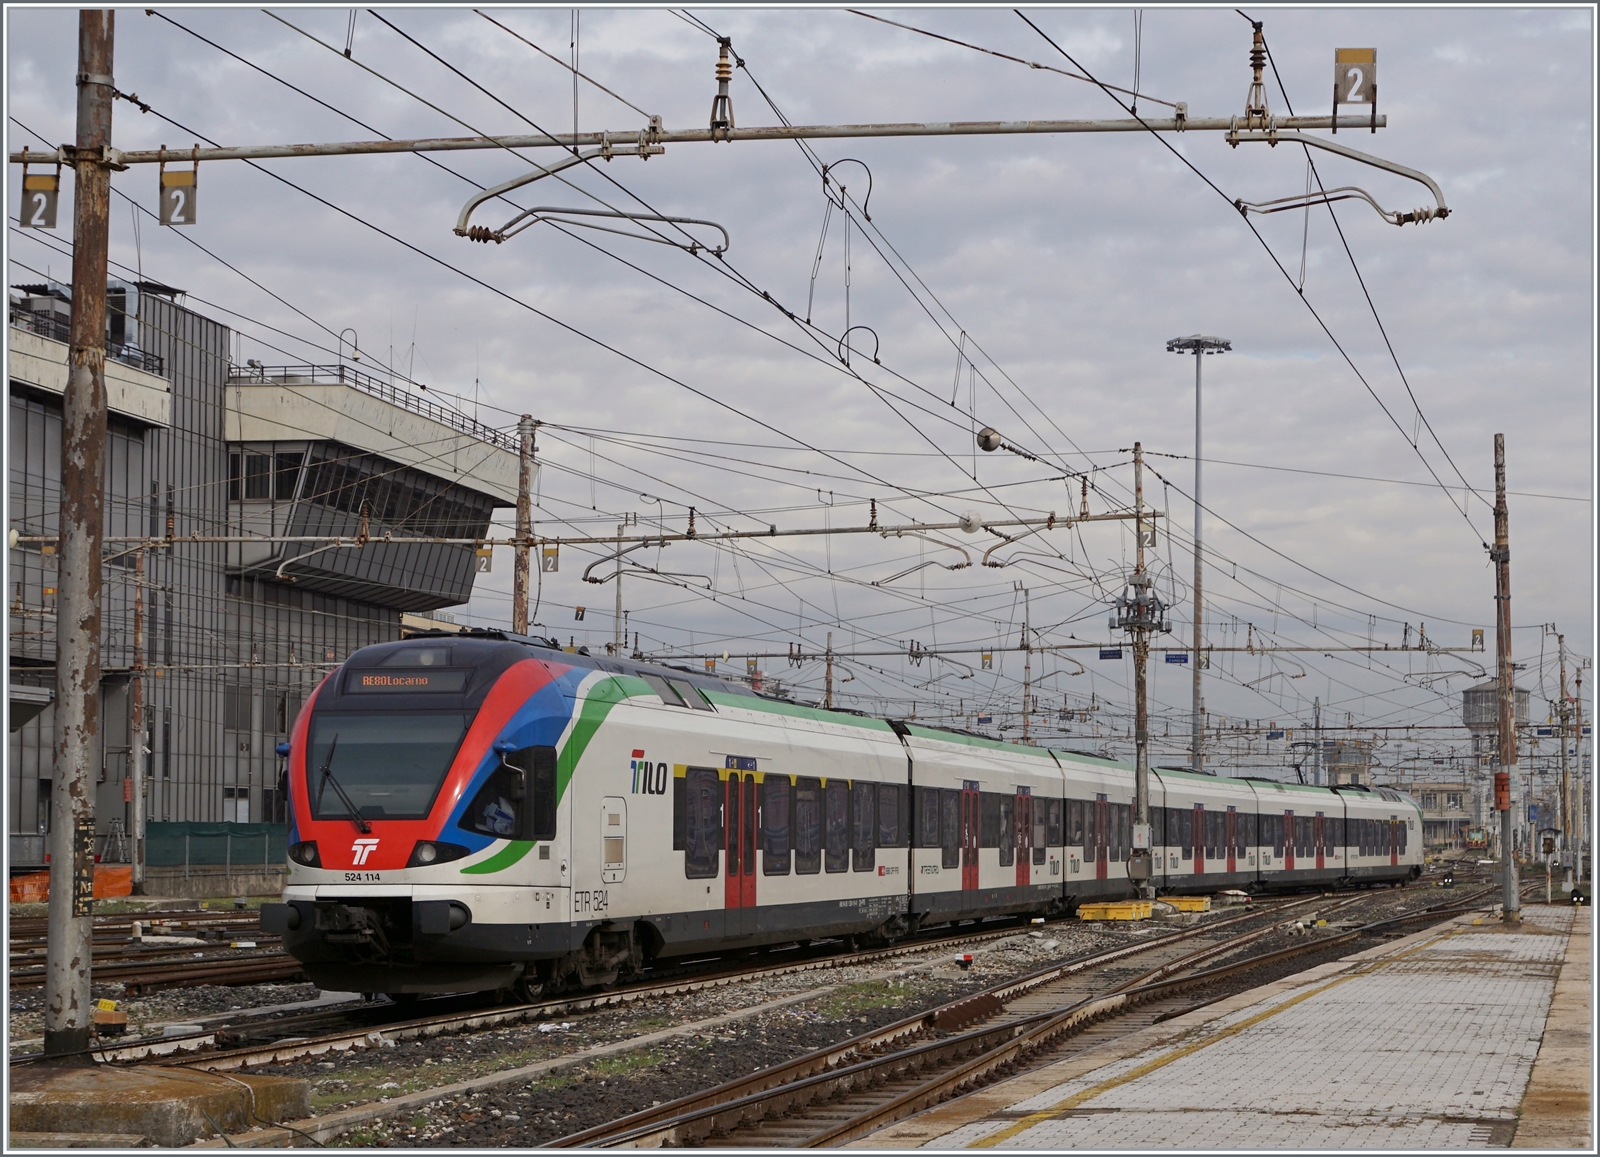 Der SBB TILO RABe 524 114 verlässt Milano Central in Richtung Schweiz. Chiasso, der Grenzbahnhof liegt von Milano nur 51 km Entfernt. Ziel des Zuges ist Locarno, welche durch den neuen Ceneri-Basistunnel und eine Verbindungsstrecke in 1 Stunde und 52 Minuten erreicht wird. 

8. November 2022